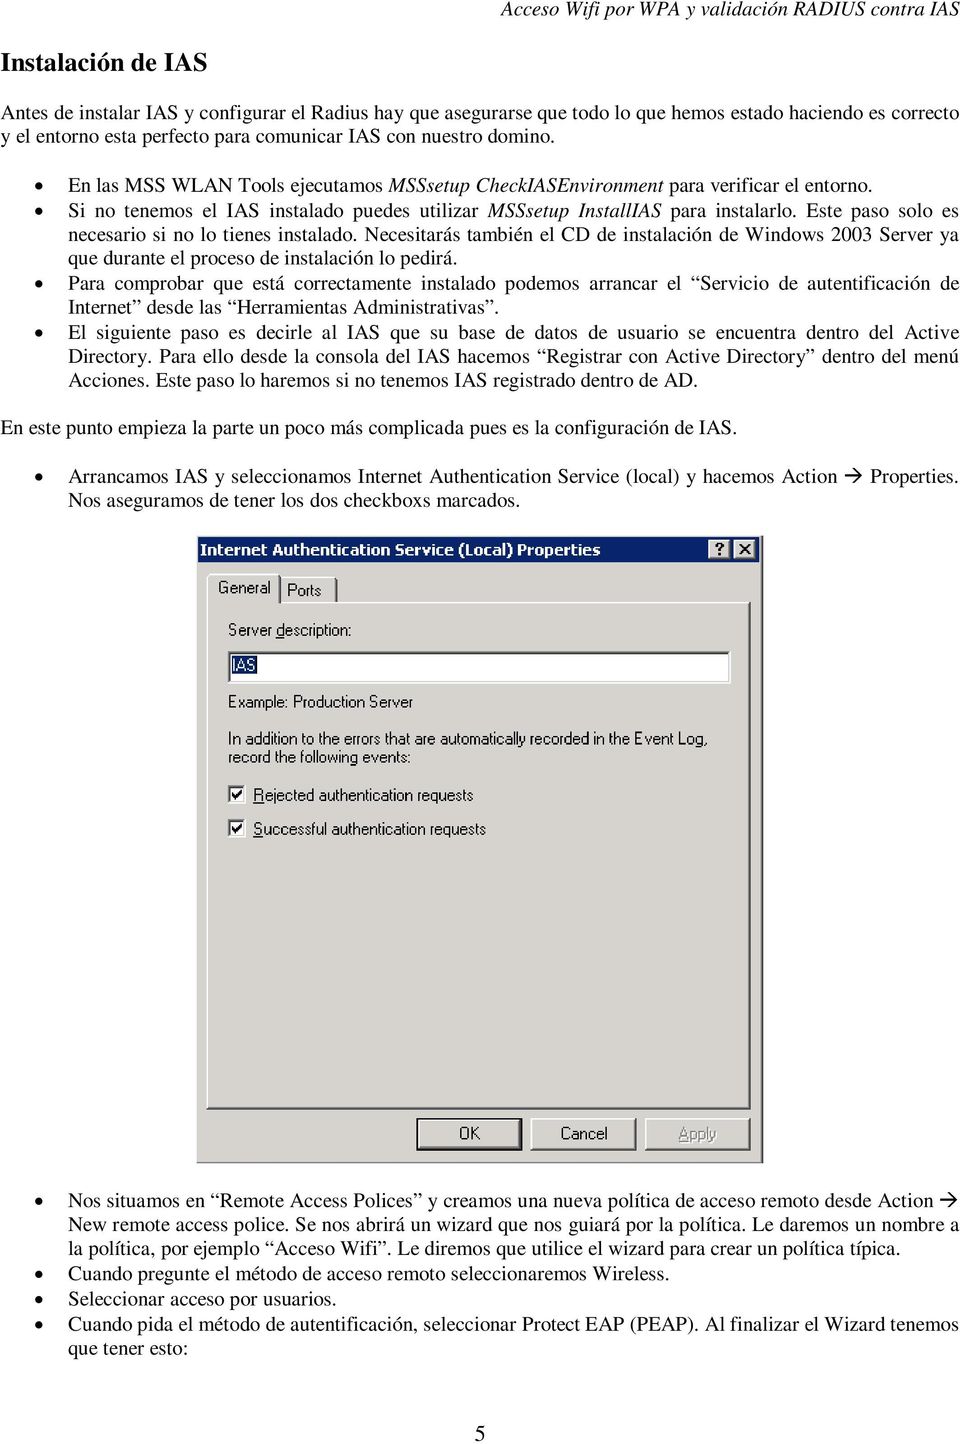 Este paso solo es necesario si no lo tienes instalado. Necesitarás también el CD de instalación de Windows 2003 Server ya que durante el proceso de instalación lo pedirá.